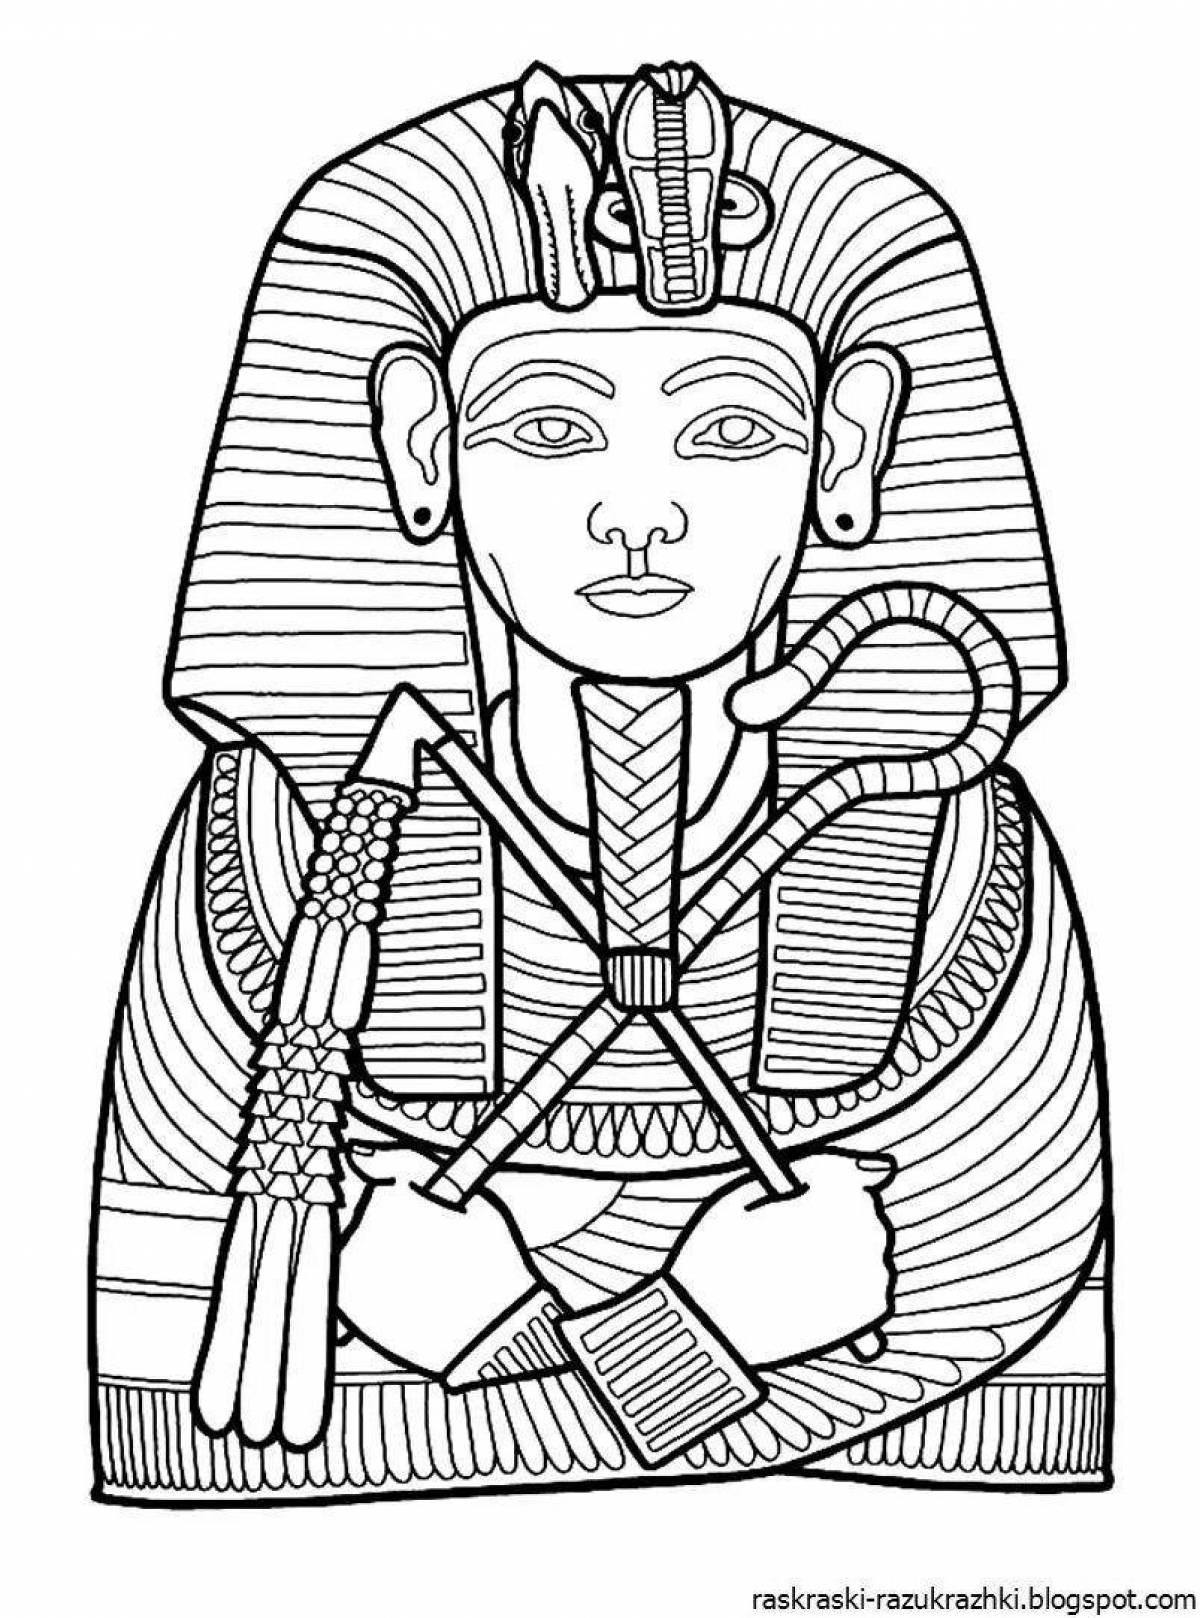 Pharaoh Tutankhamen's shiny mask coloring book